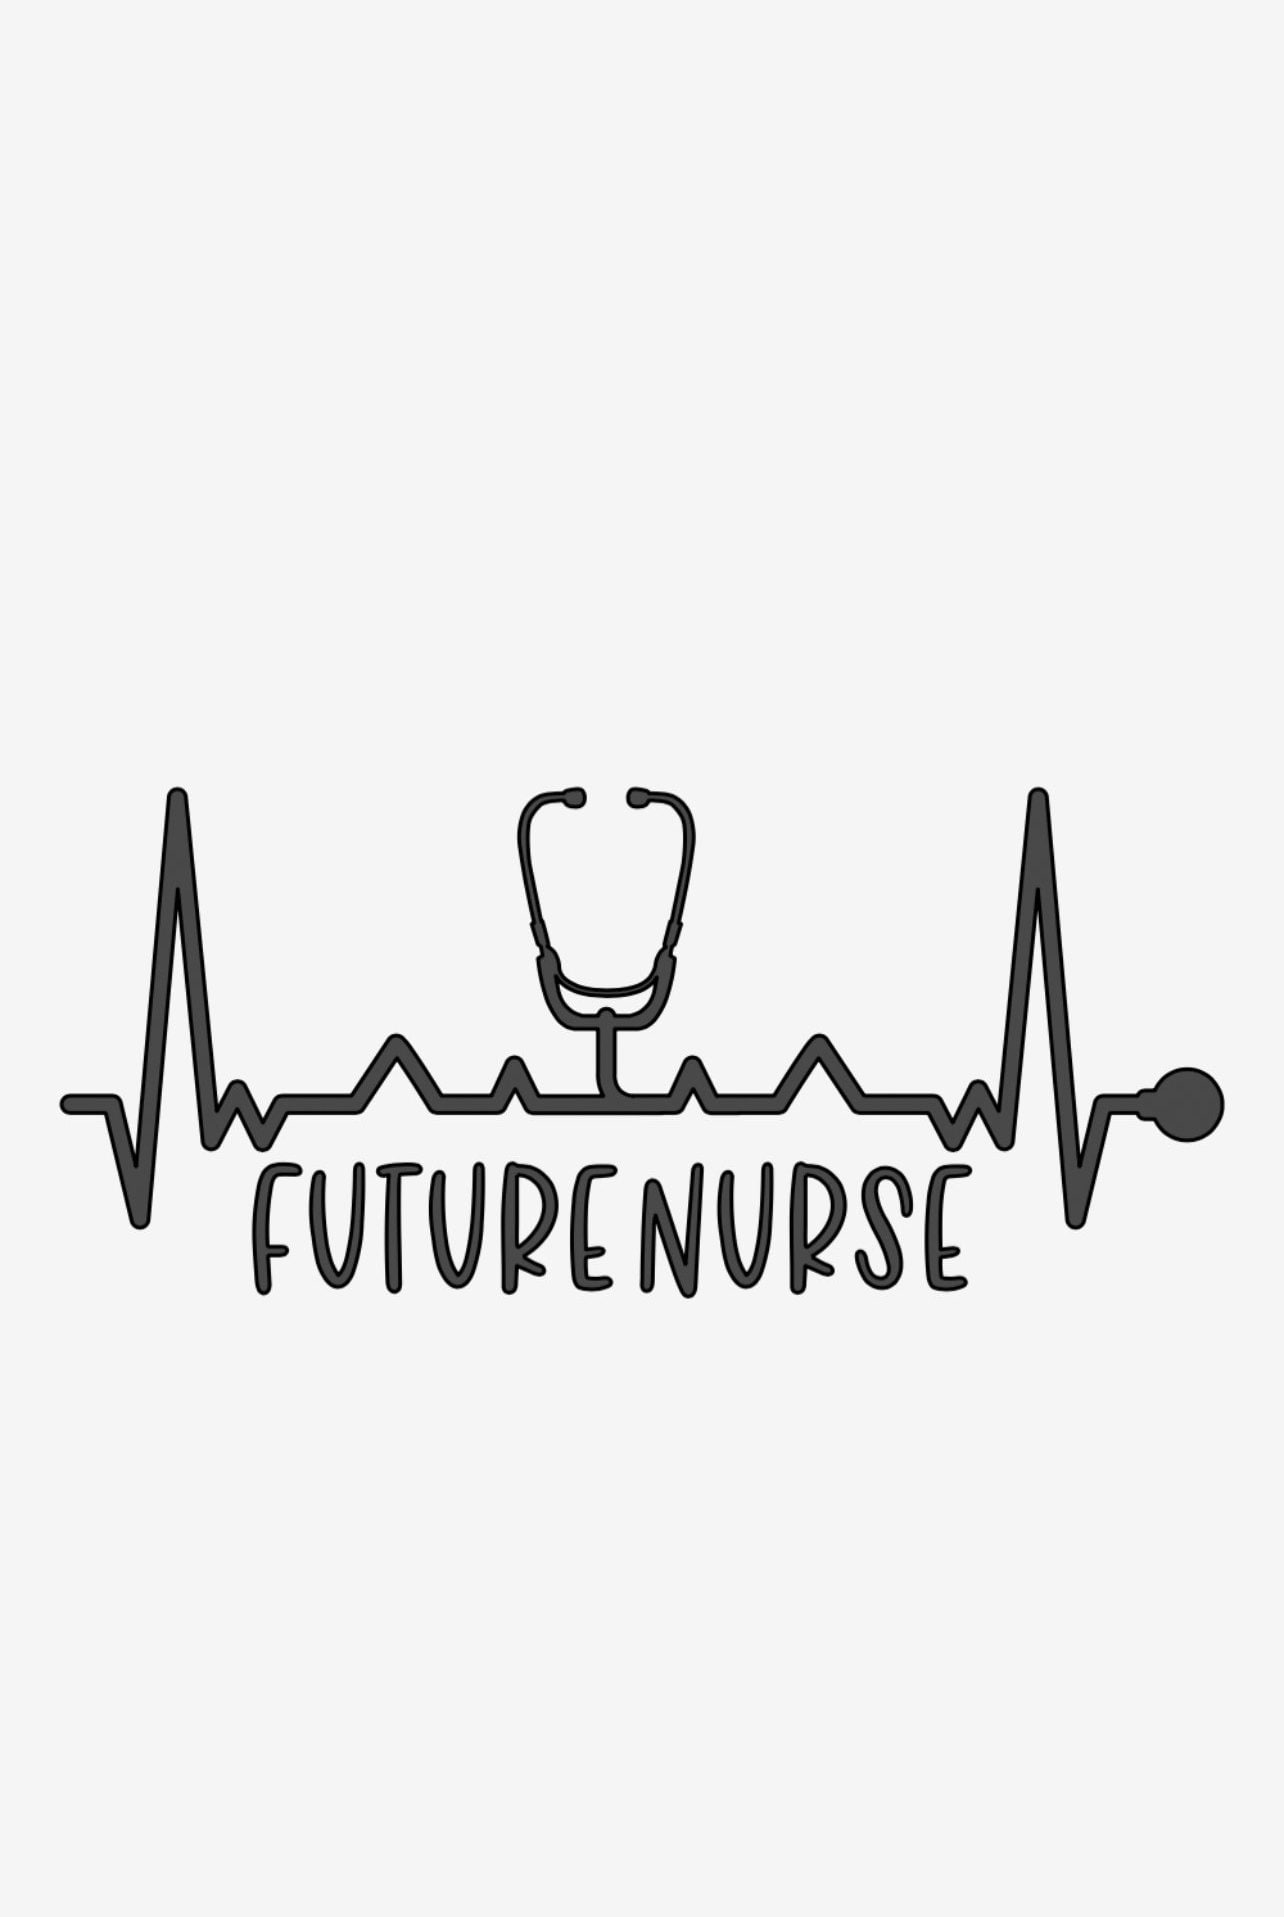 A future nurse logo - Nurse